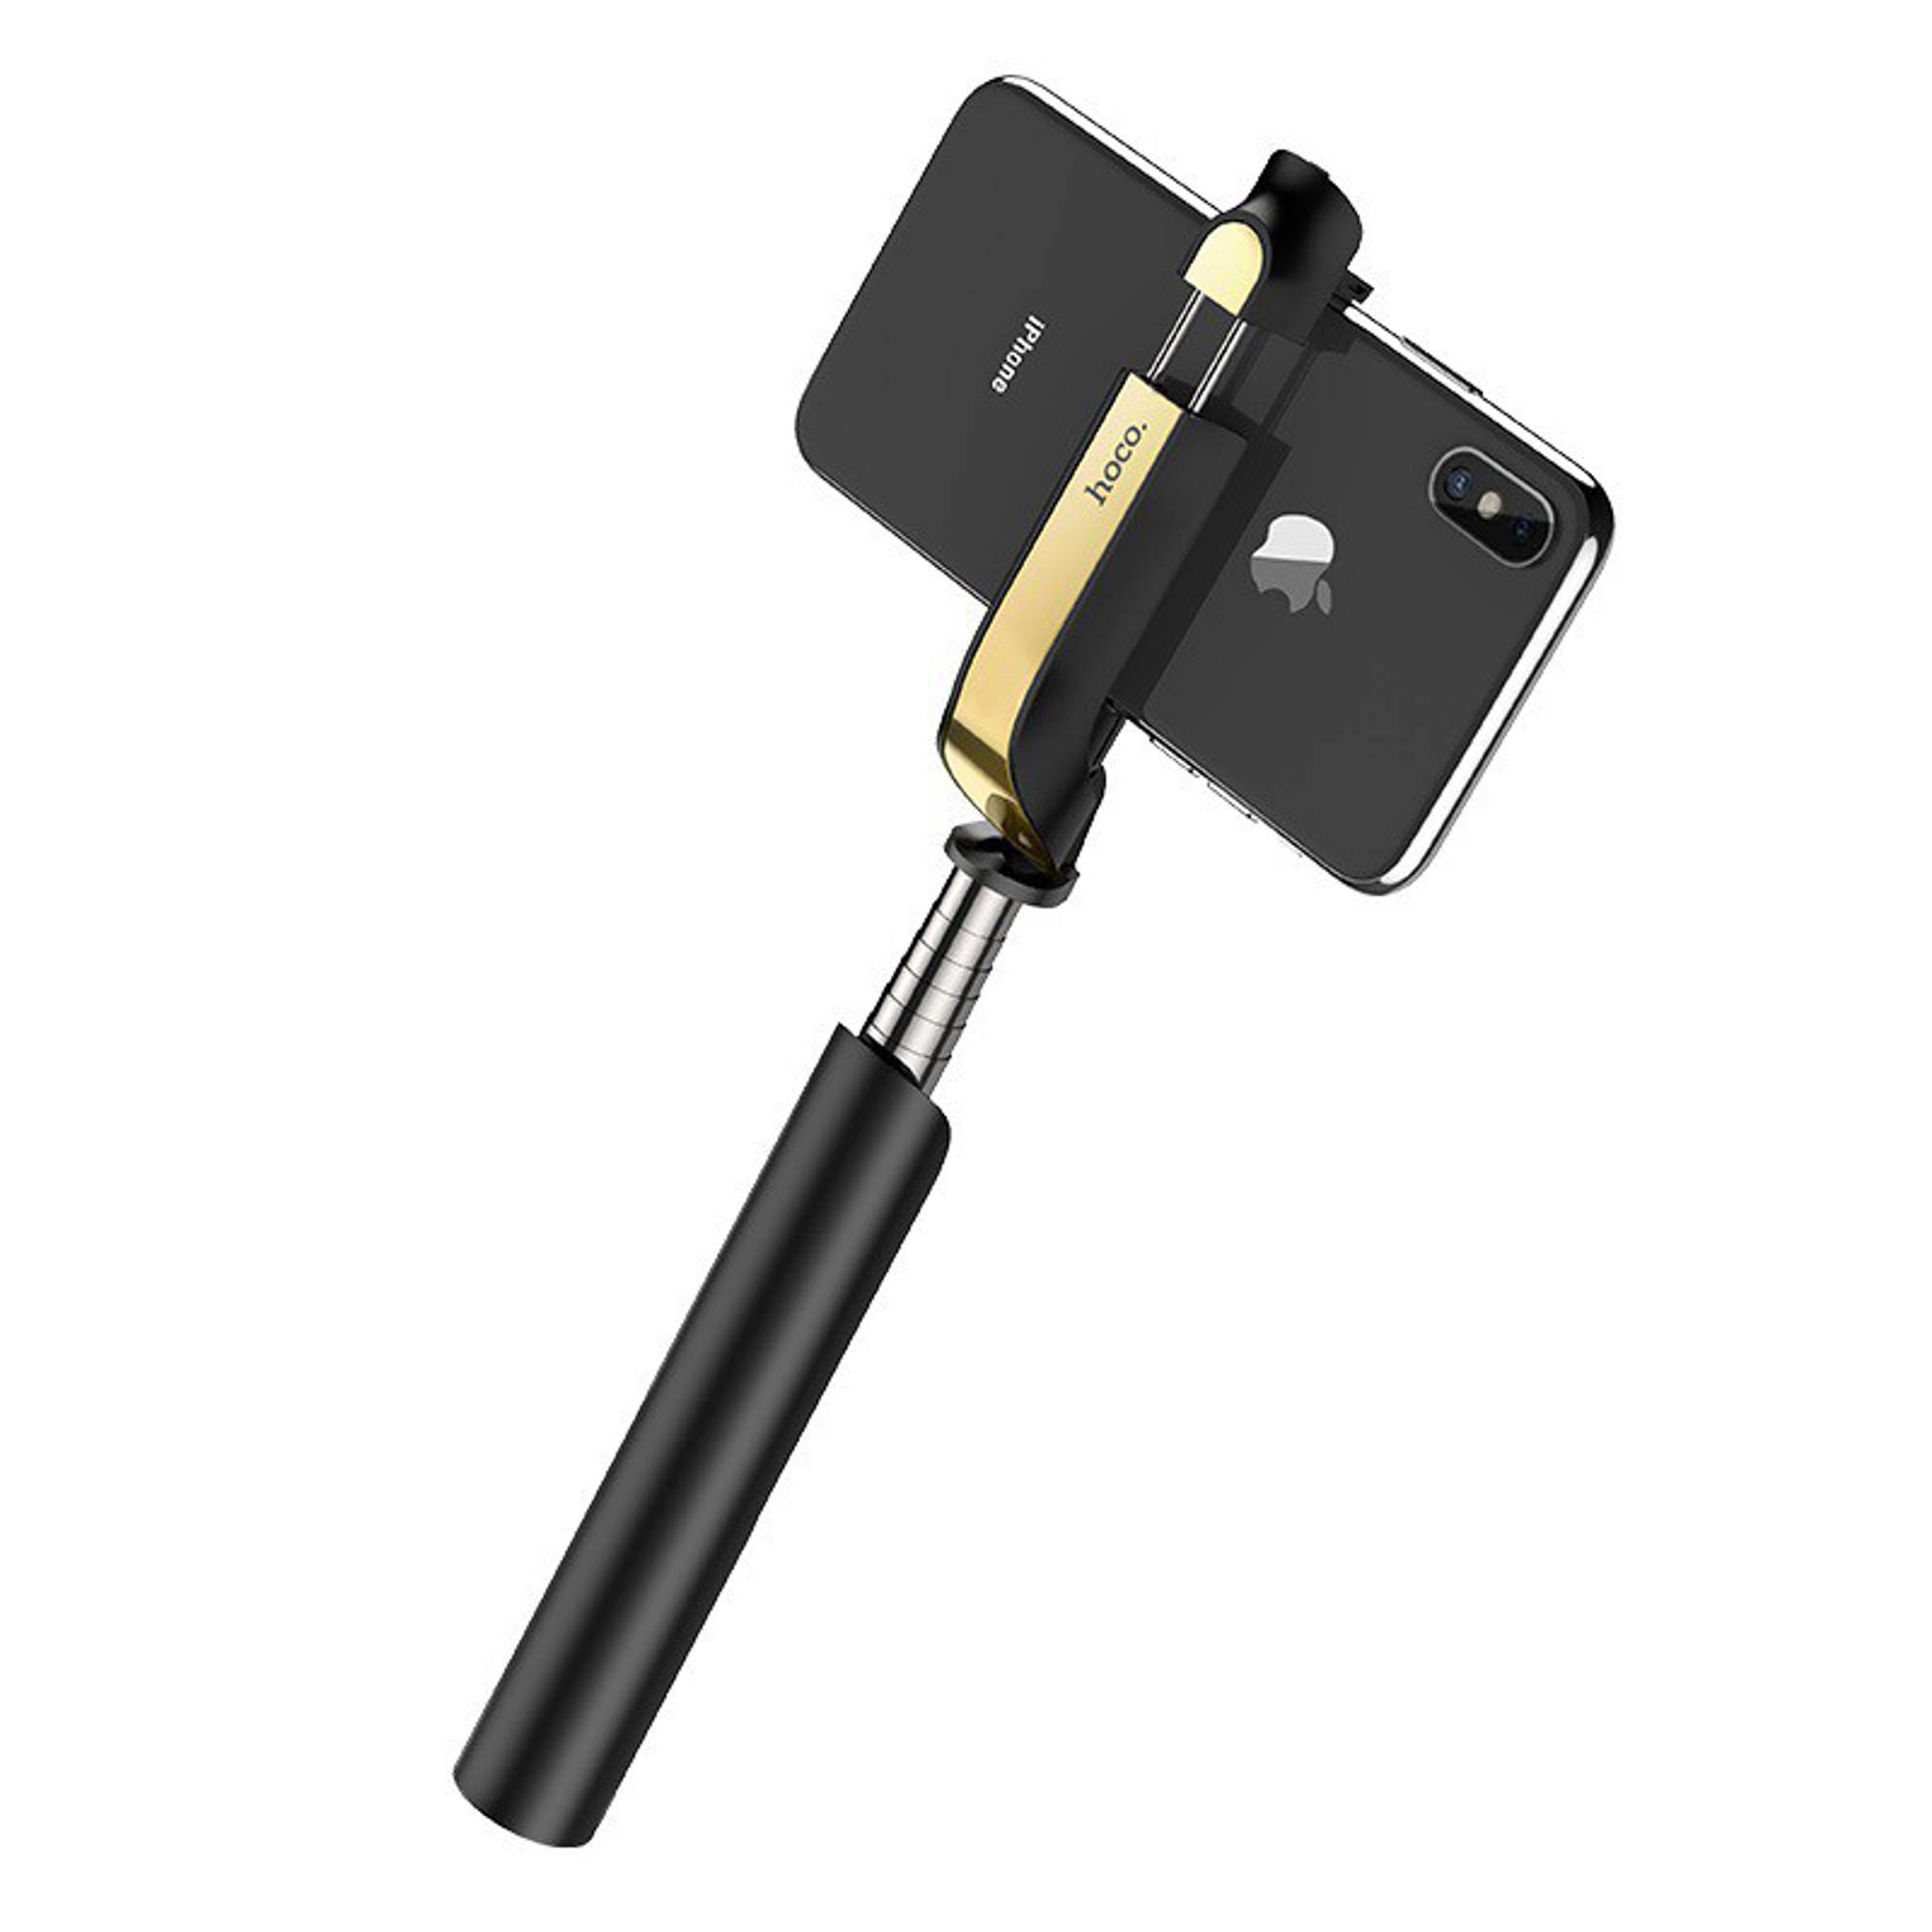 Gậy Chụp Ảnh Selfie Hoco K12: Tự sướng chưa bao giờ dễ dàng đến thế! Với chiếc gậy chụp ảnh Selfie Hoco K12, bạn có thể chụp những bức ảnh đẹp và độc đáo chỉ trong nháy mắt. Sản phẩm chất lượng cao và thiết kế đẹp mắt sẽ làm hài lòng những người yêu công nghệ khó tính nhất.